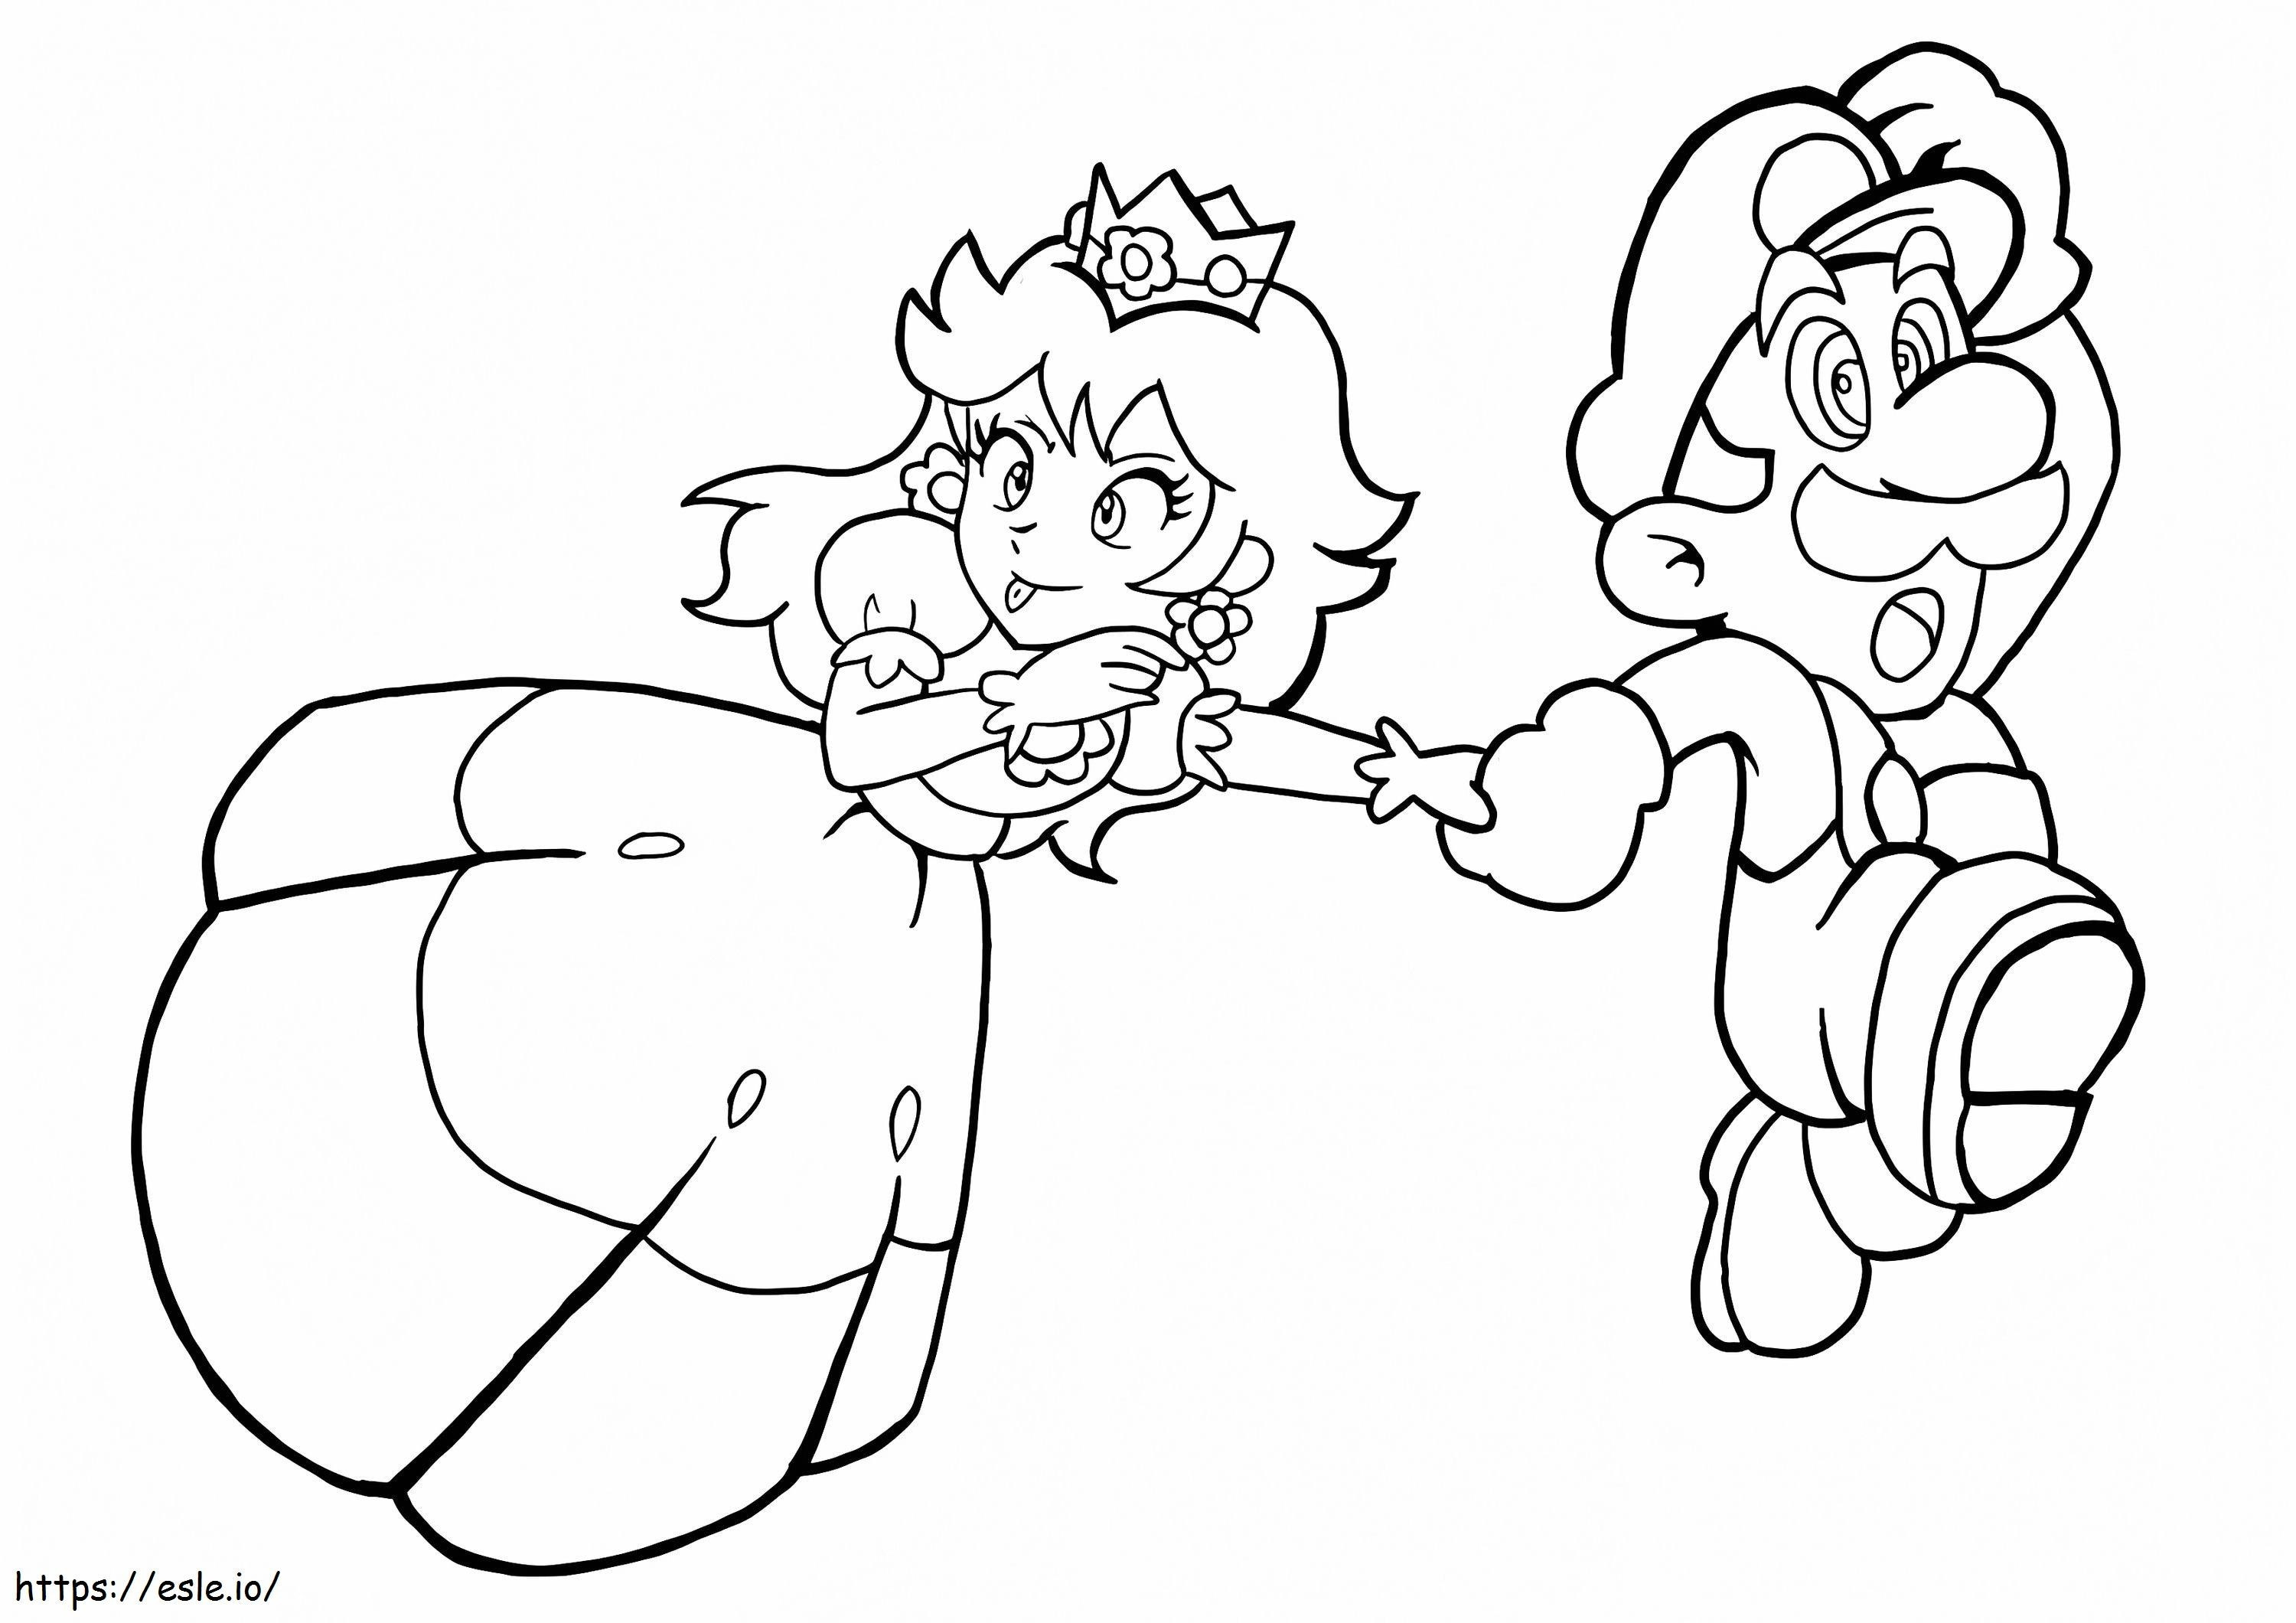 Leuke prinses Peach en Mario rennen kleurplaat kleurplaat